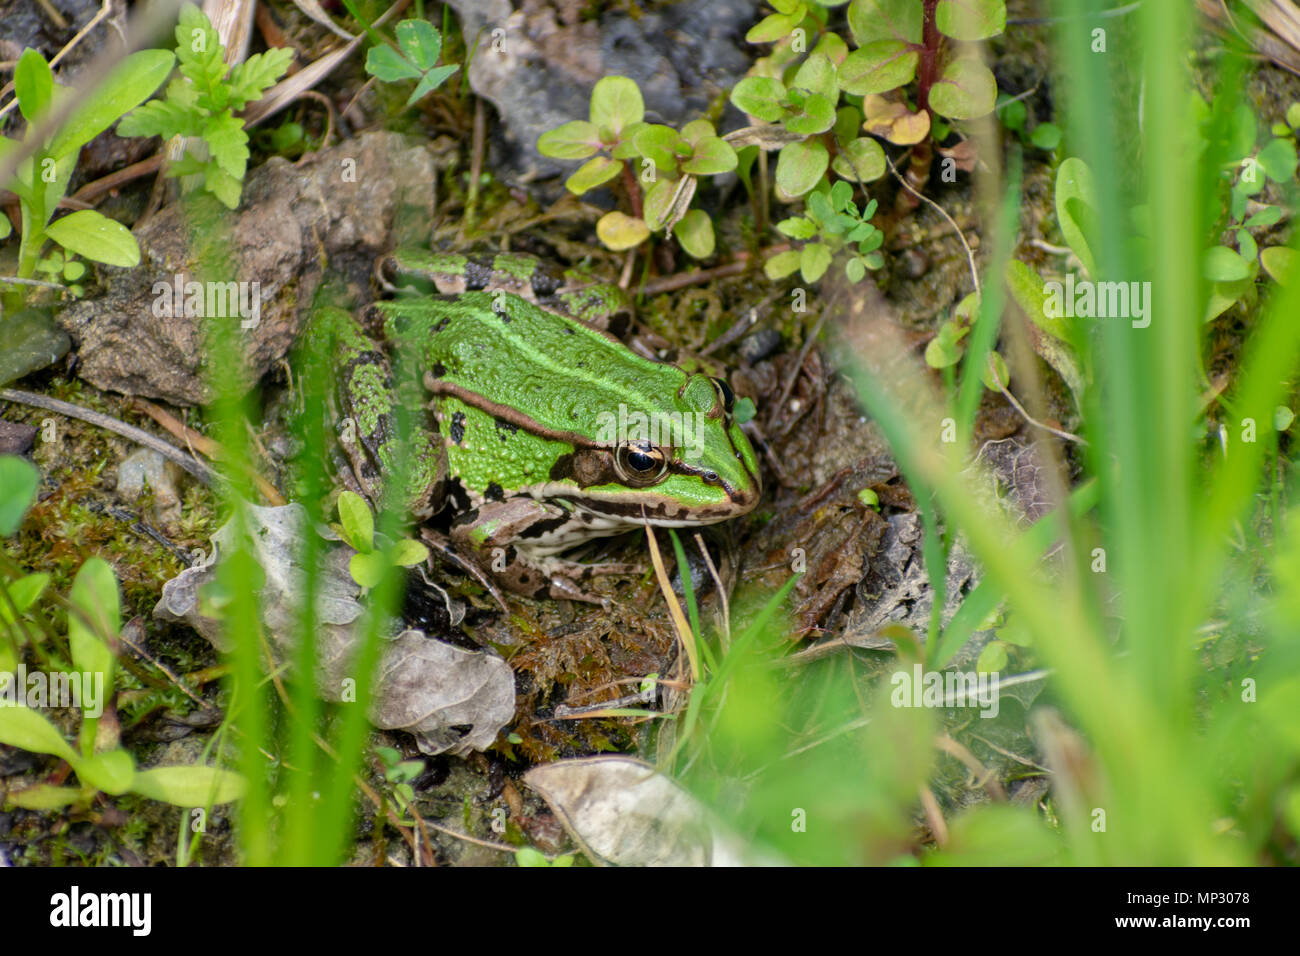 Green frog Standortwahl unter Blätter und grüne Pflanzen einschließlich Gras in der Front. Frosch ist esculentus (Pelophylax Wasserfrosch) Stockfoto